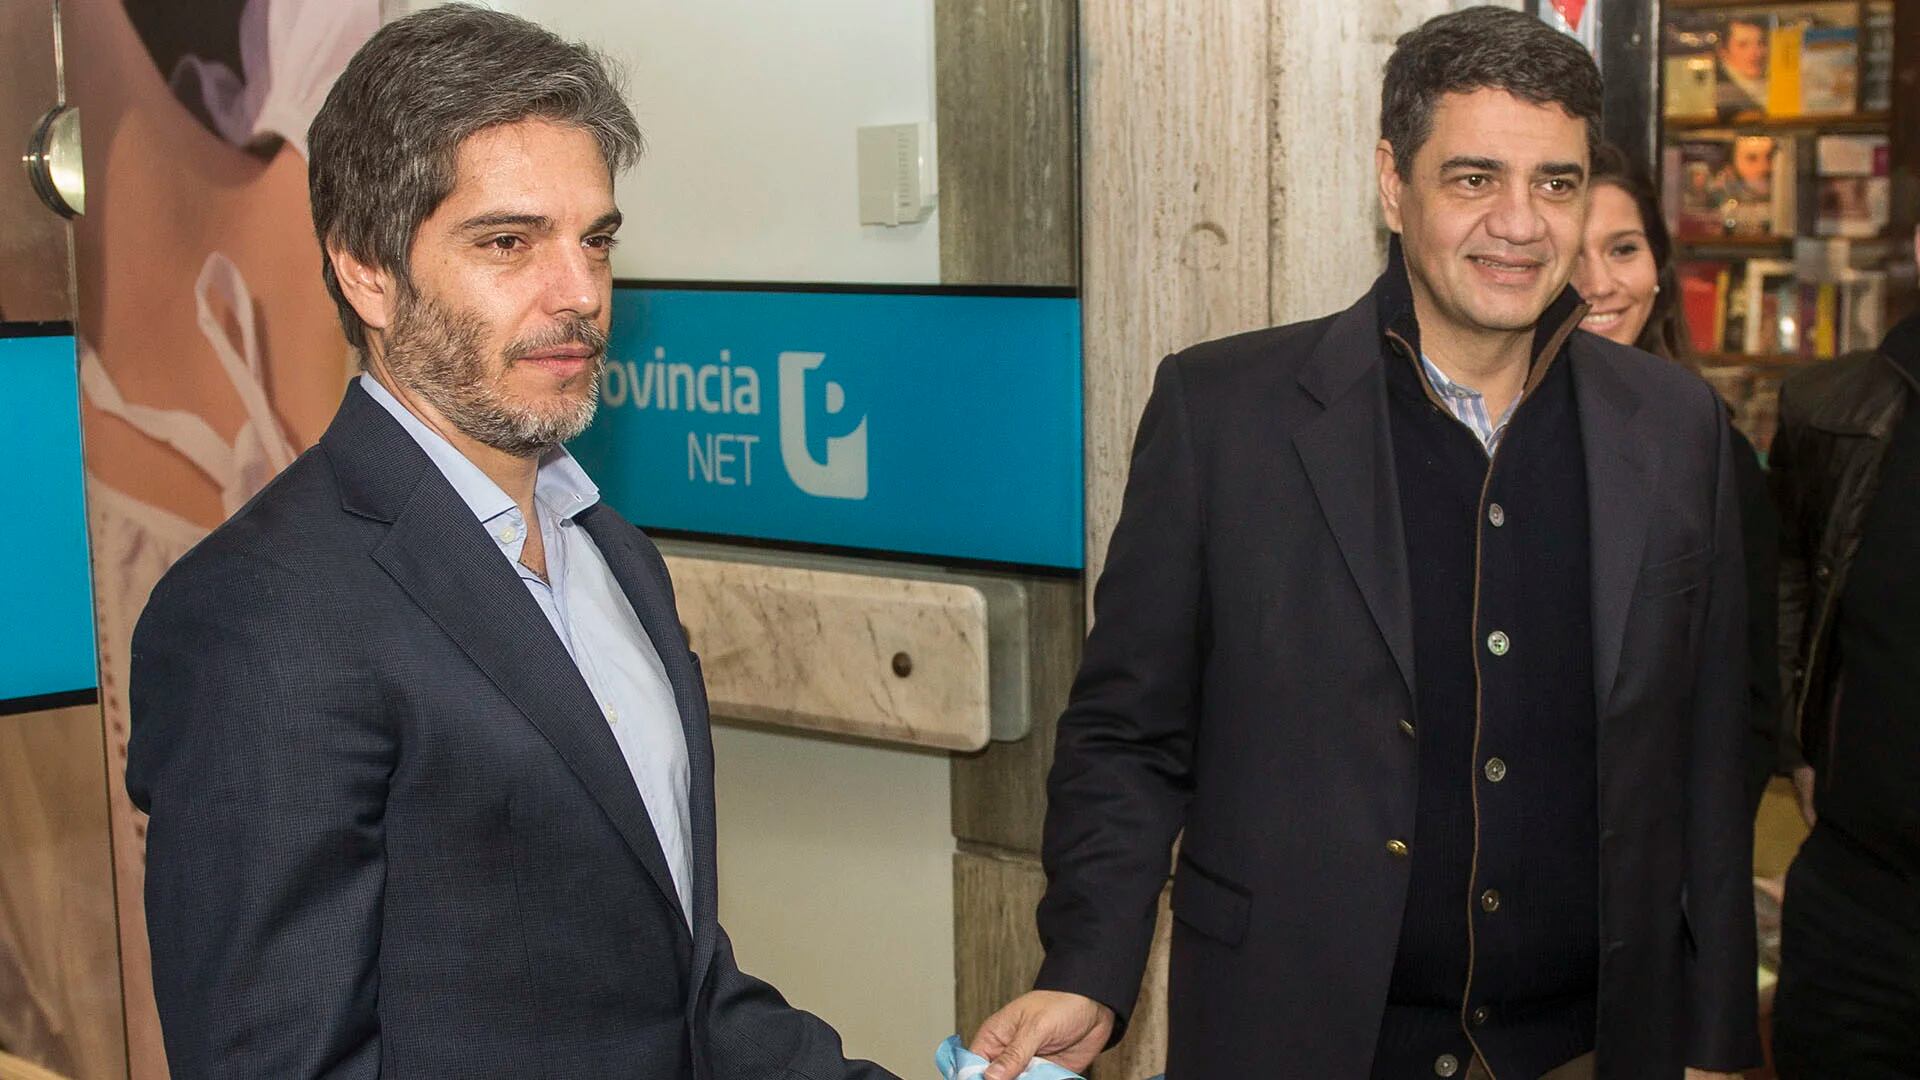 El titular de la empresa de tecnología Provincia NET, Raúl Piola, y Jorge Macri, impulsan la cercanía a las pymes (Grupo Bapro)